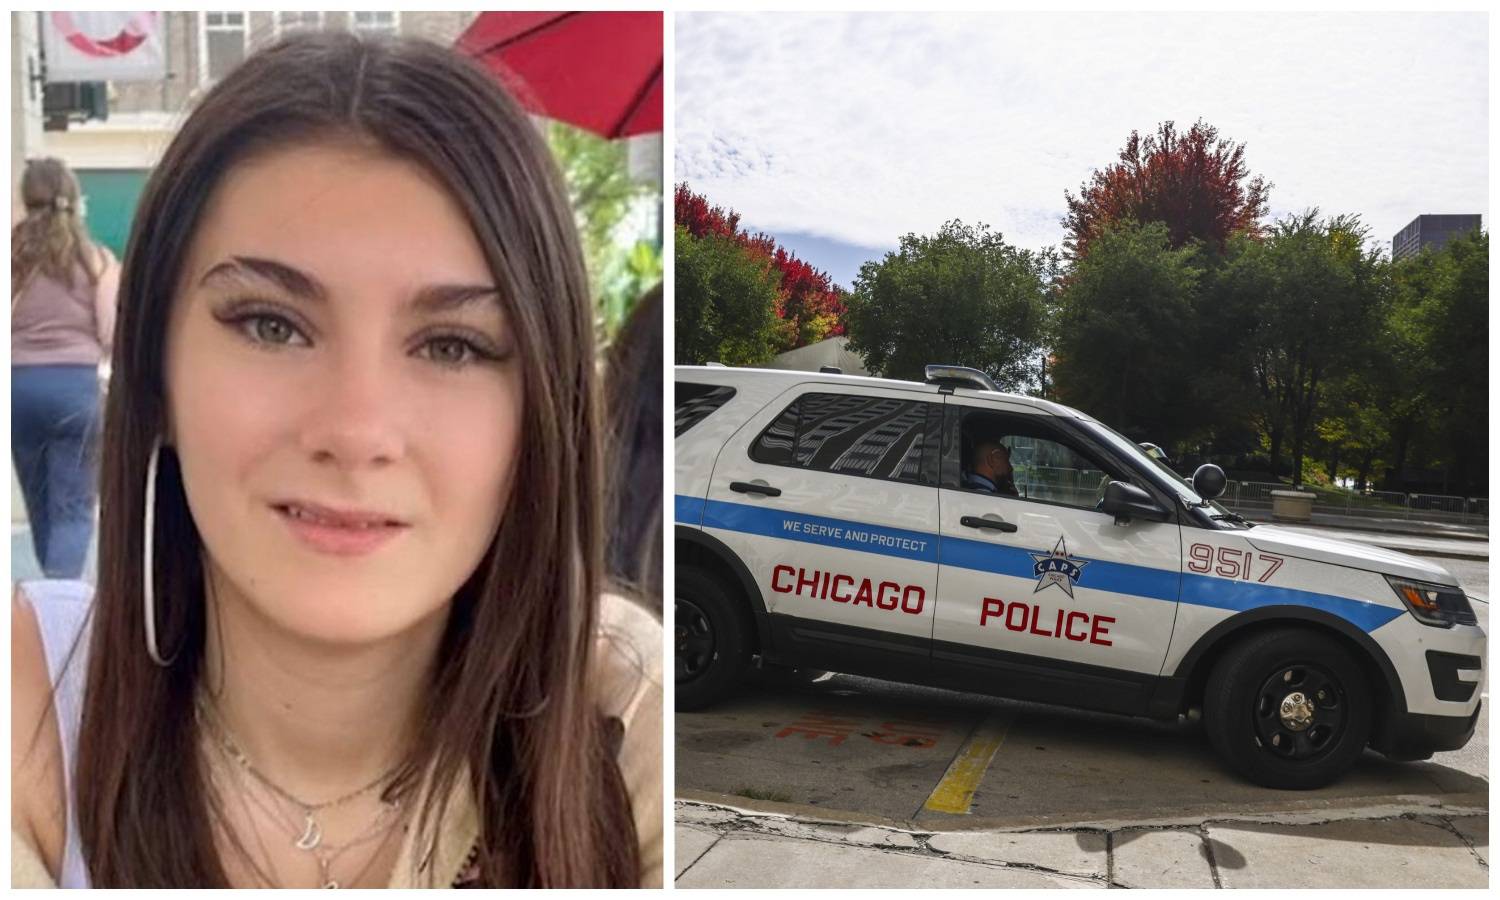 Katarina (15) u Chicagu nestala misteriozno, obitelj je u šoku: 'Nikada nije odlazila od kuće'